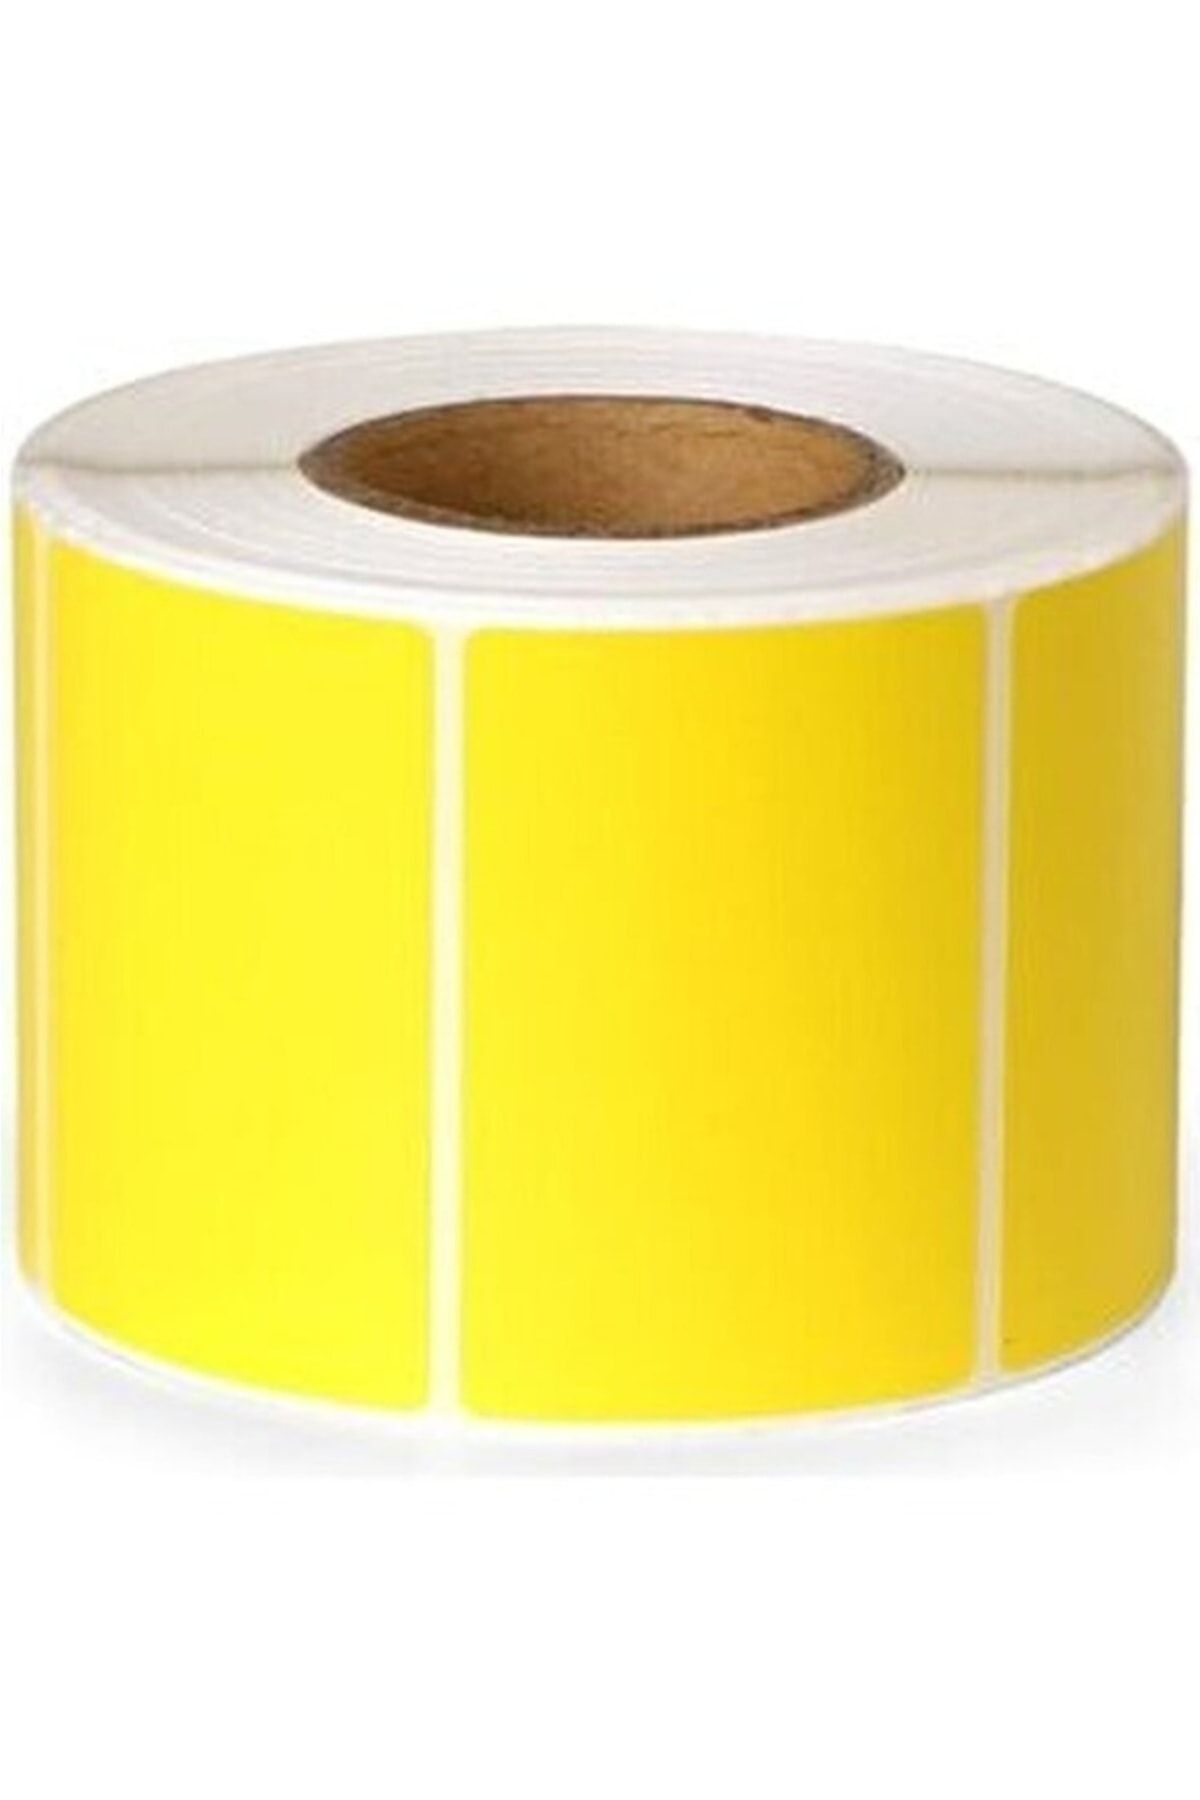 KARTALLAR ETİKET 40x60 Eczane Etiketi Ilaç Etiketi Sarı Renk Eko Termal Barkod Etiketi